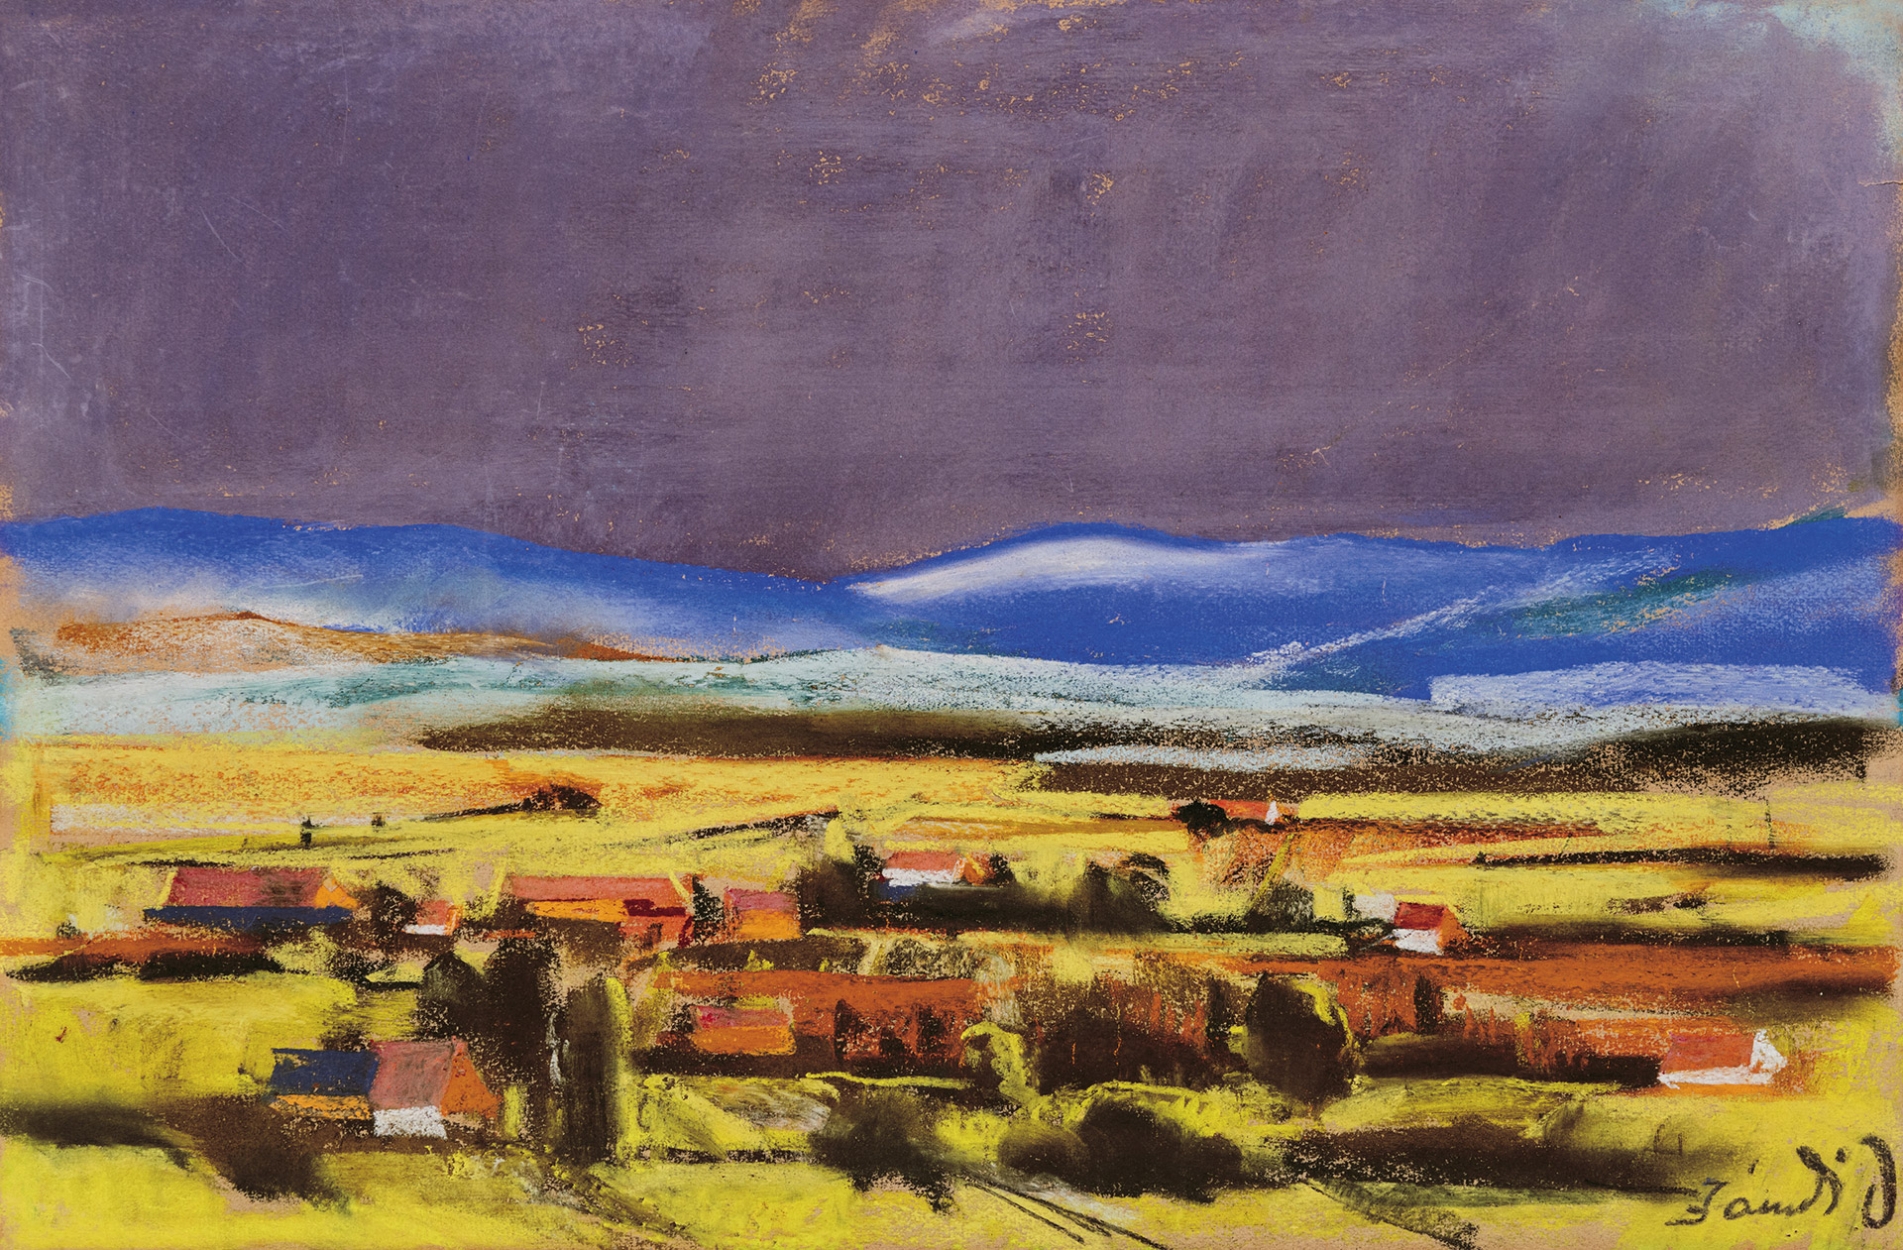 Jándi Dávid (1893-1944) Landscape with houses